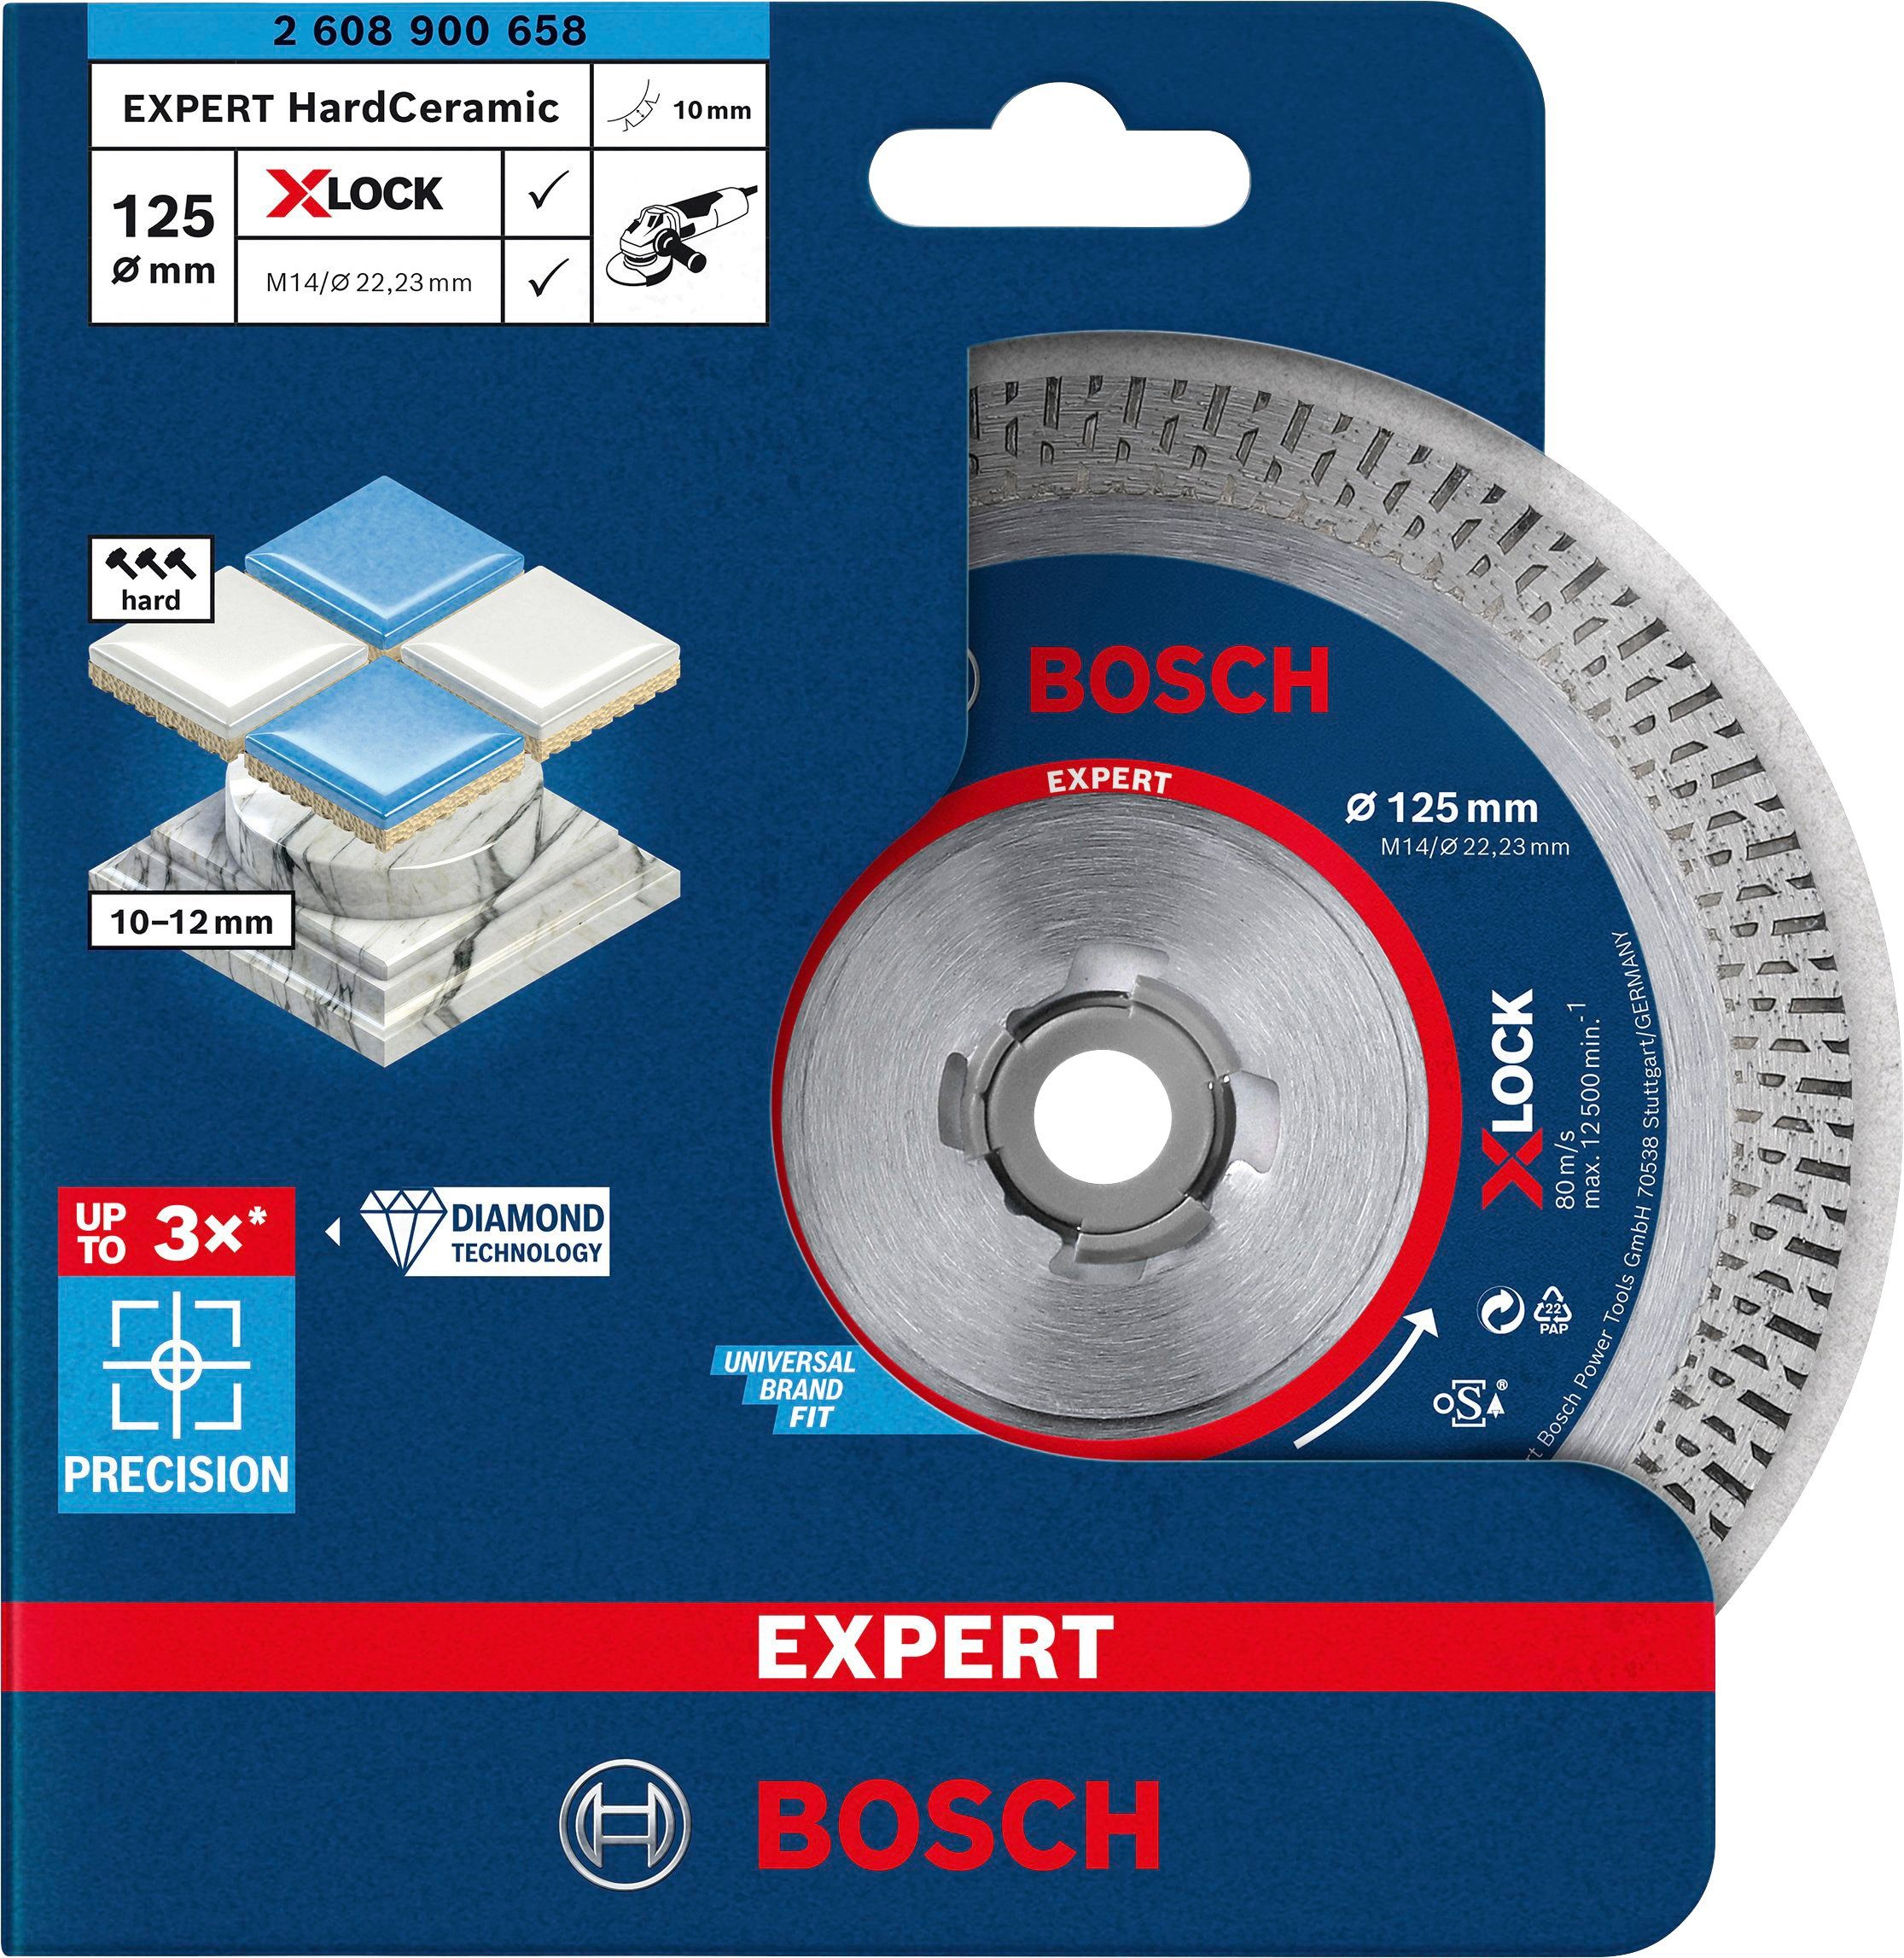 HardCeramic Bosch mm Expert 1.4 x 10 mm, X-LOCK, Diamanttrennscheibe 22.23 Professional Ø x 125